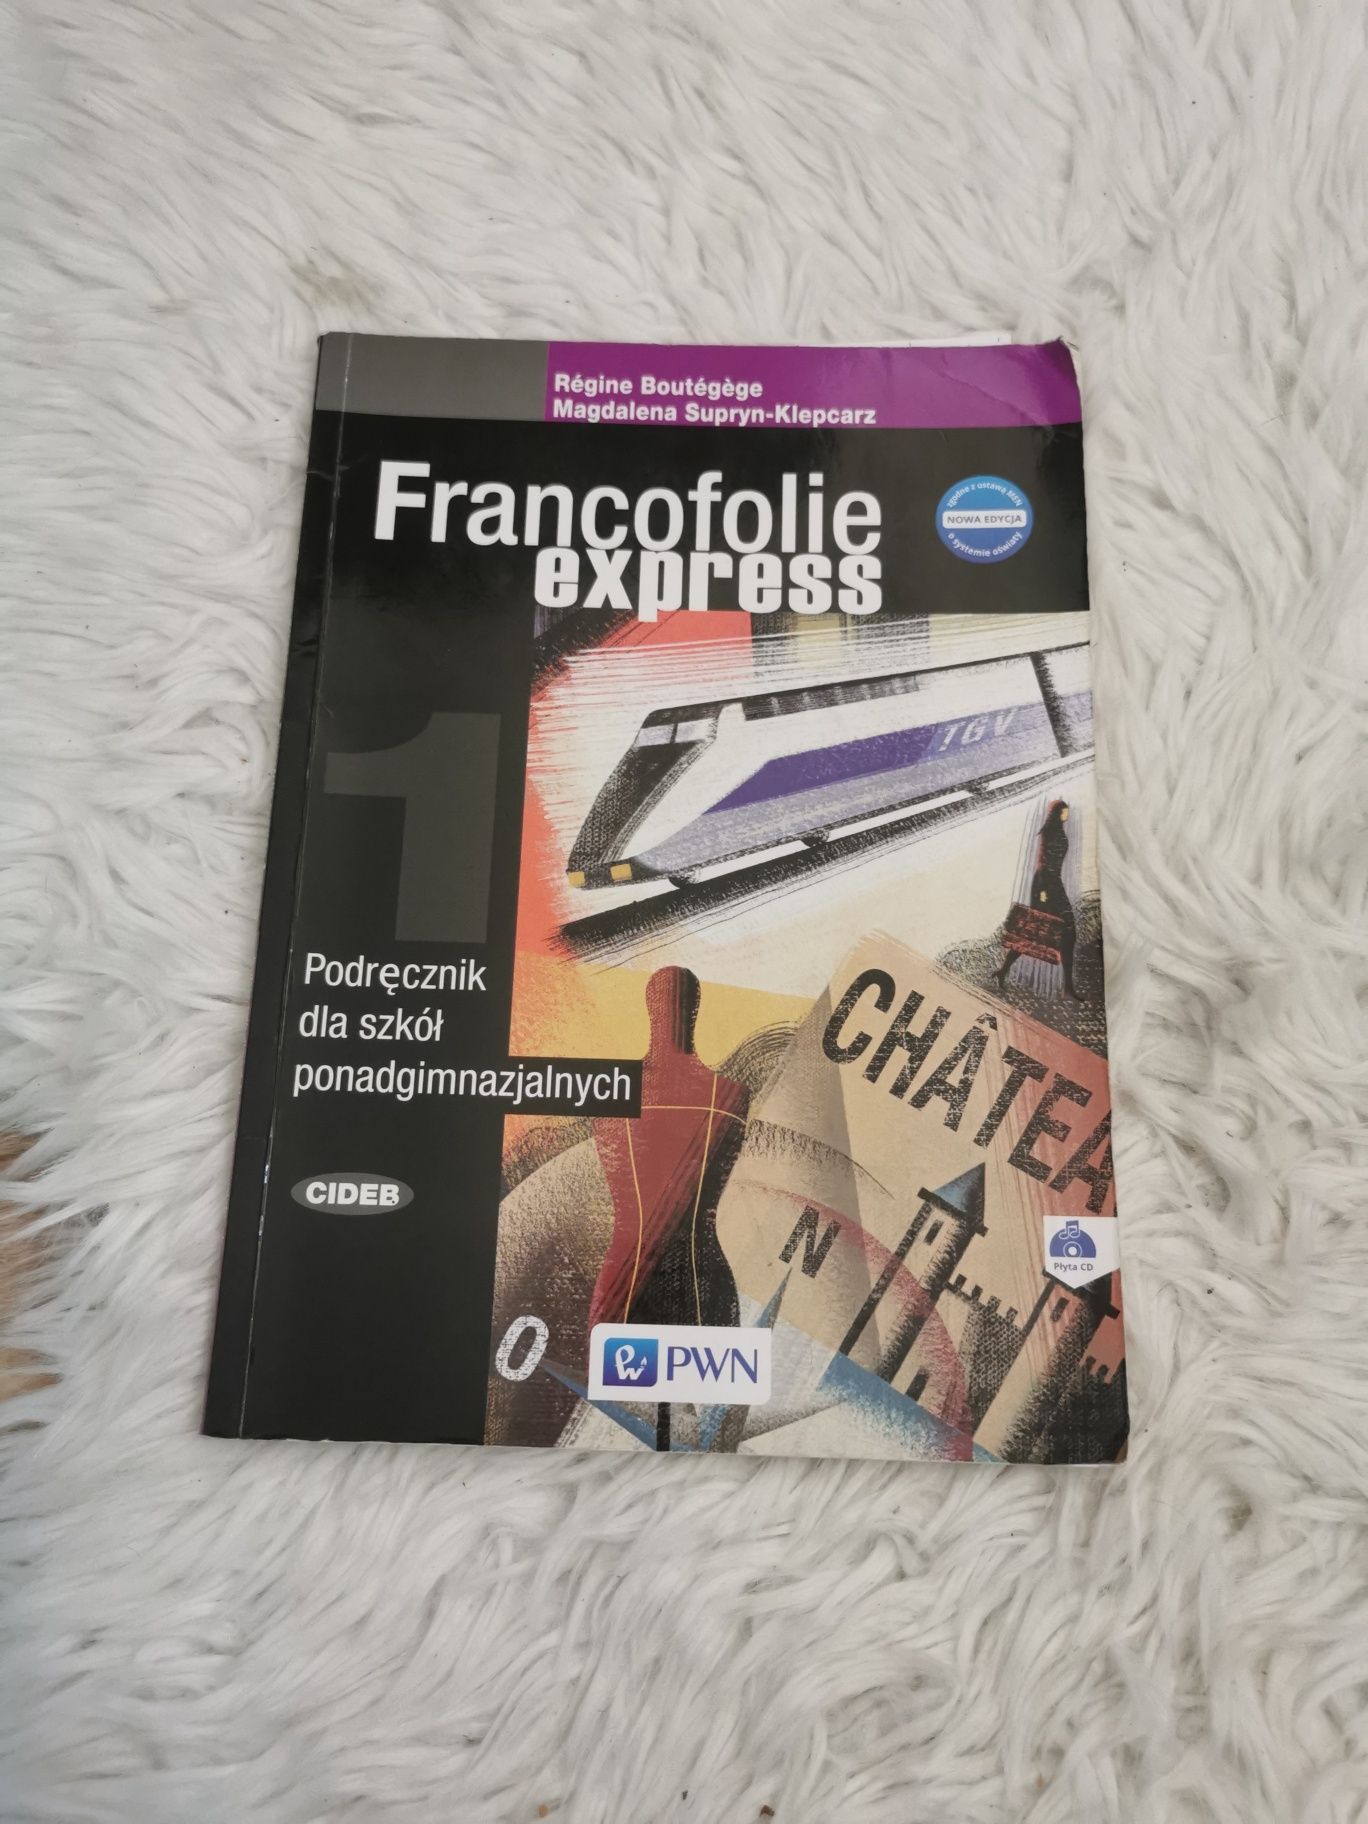 Francofolie expresso język francuski podręcznik pwn